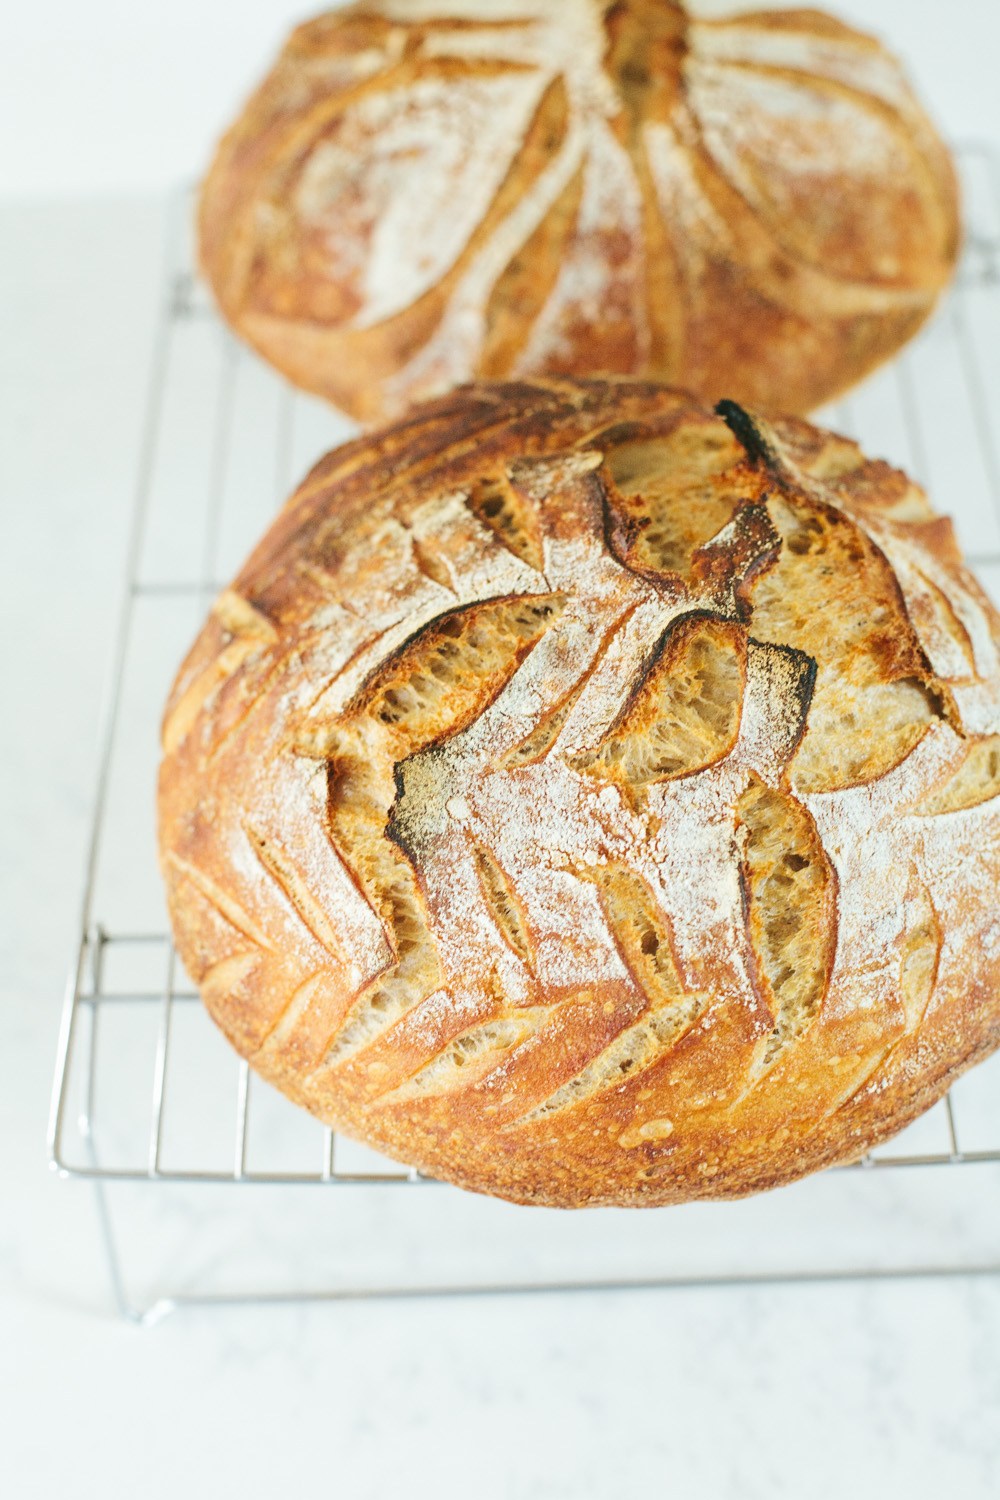 naturally leavened sourdough bread recipe